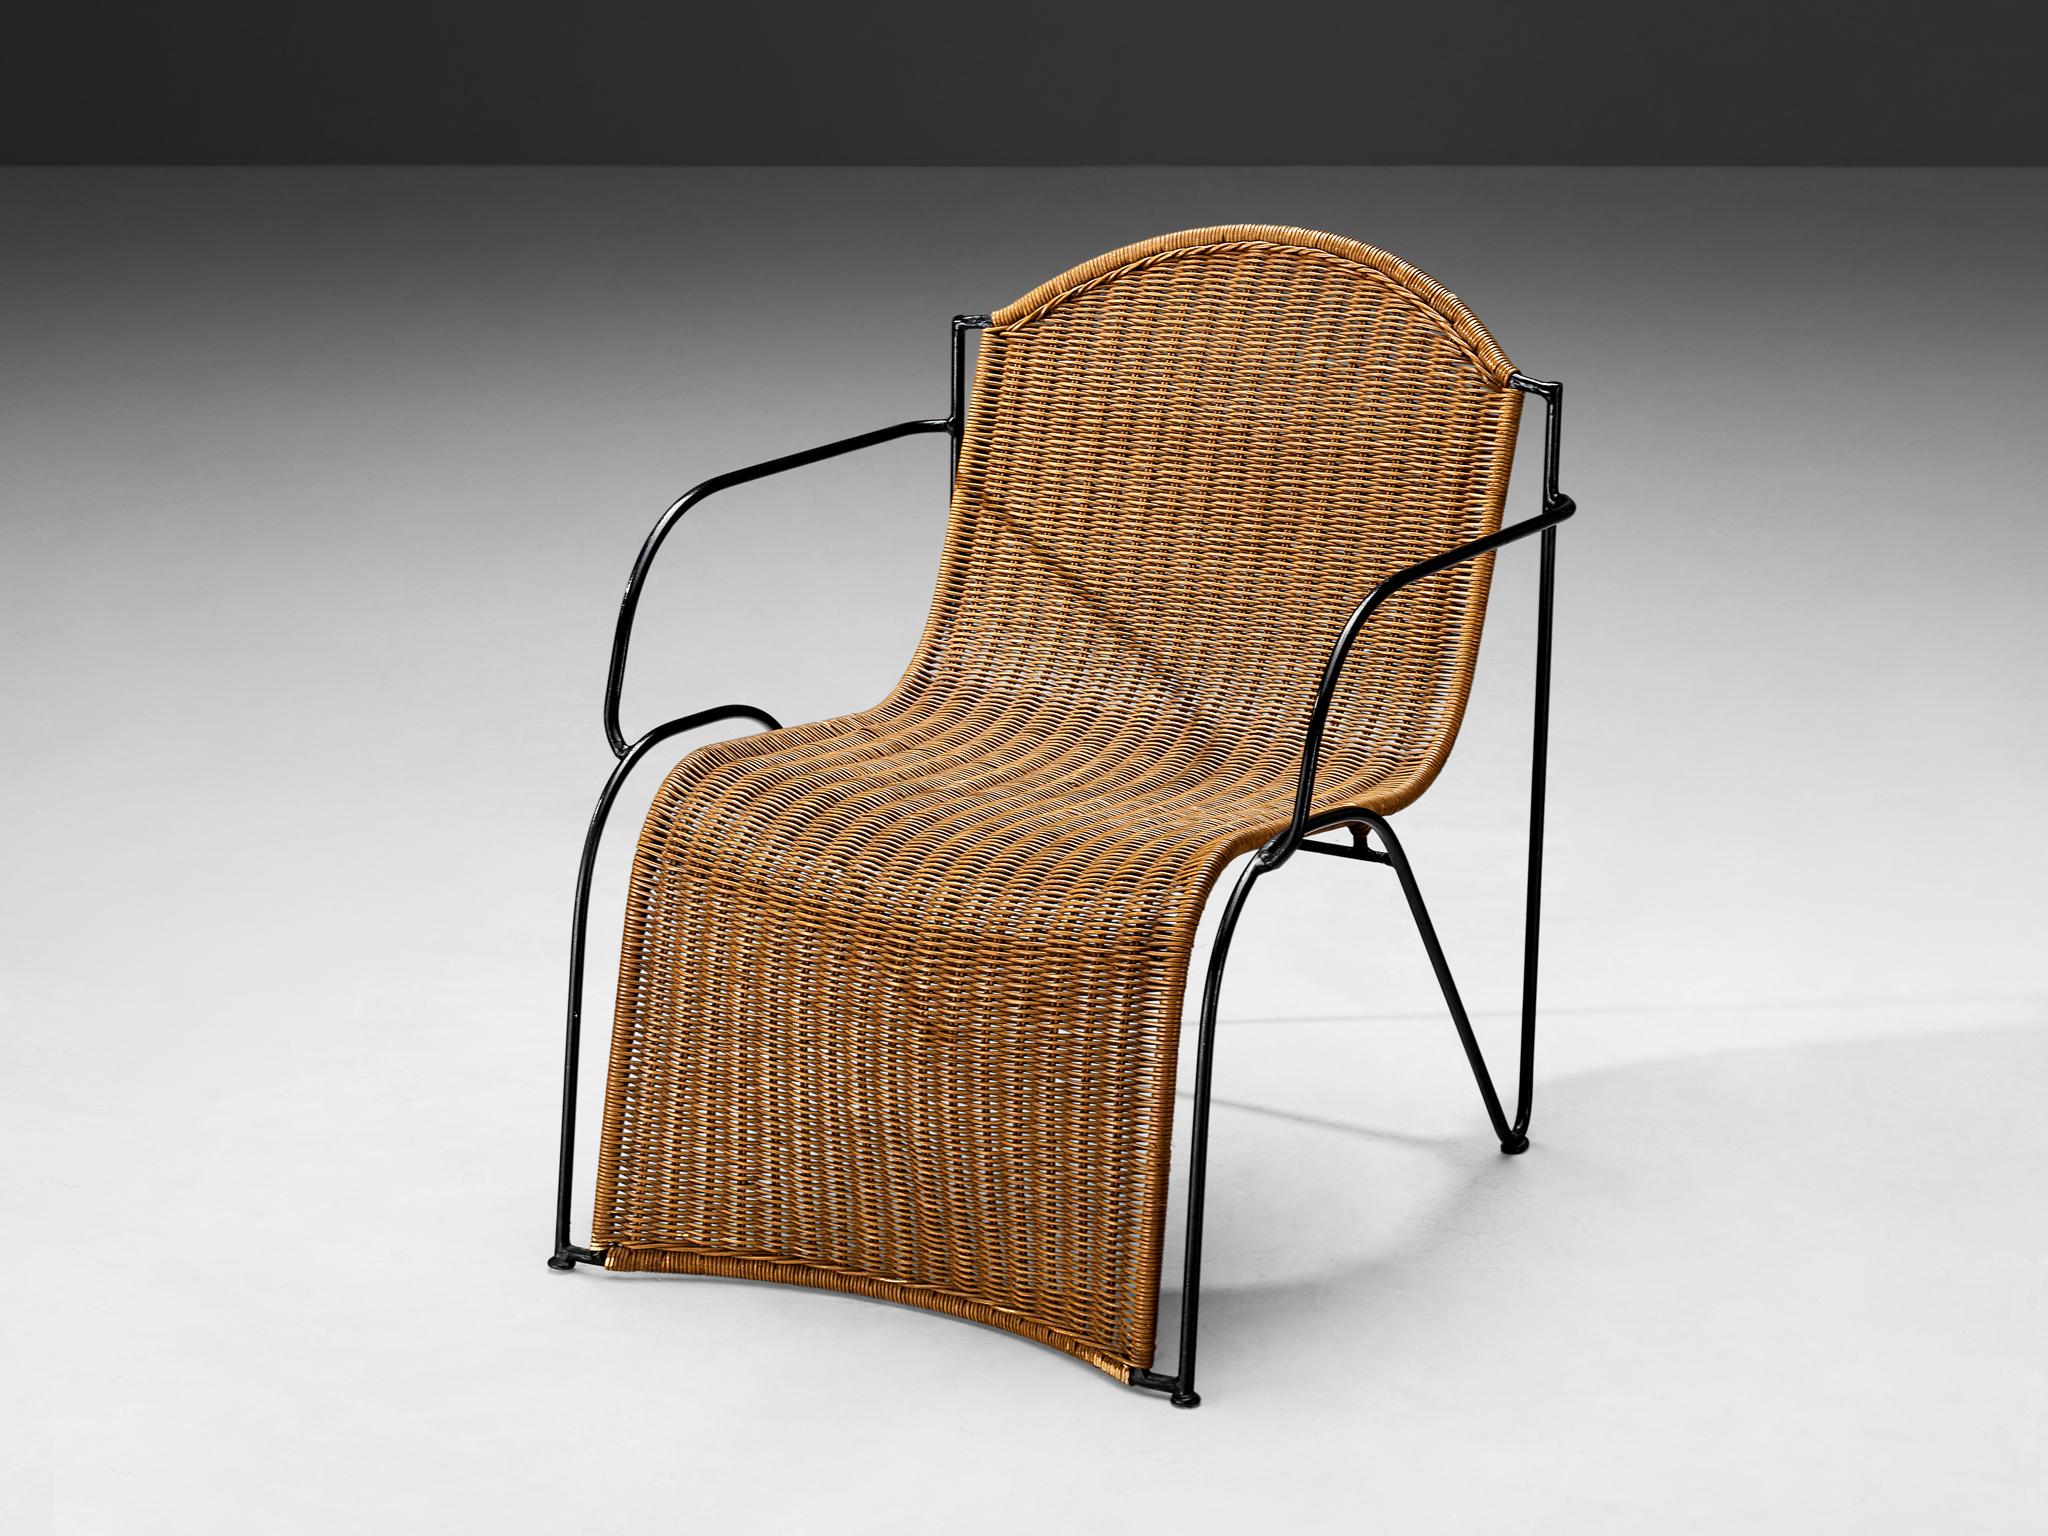 Loungesessel, Schilfrohr, lackiertes Metall, Europa, 1950er Jahre

Wunderschöner Loungesessel aus Schilfrohr und schwarz lackiertem Metallgestell. Dieses Stück verkörpert die Essenz von Eleganz, Raffinesse und Modernität. Dieser Stuhl, der in den